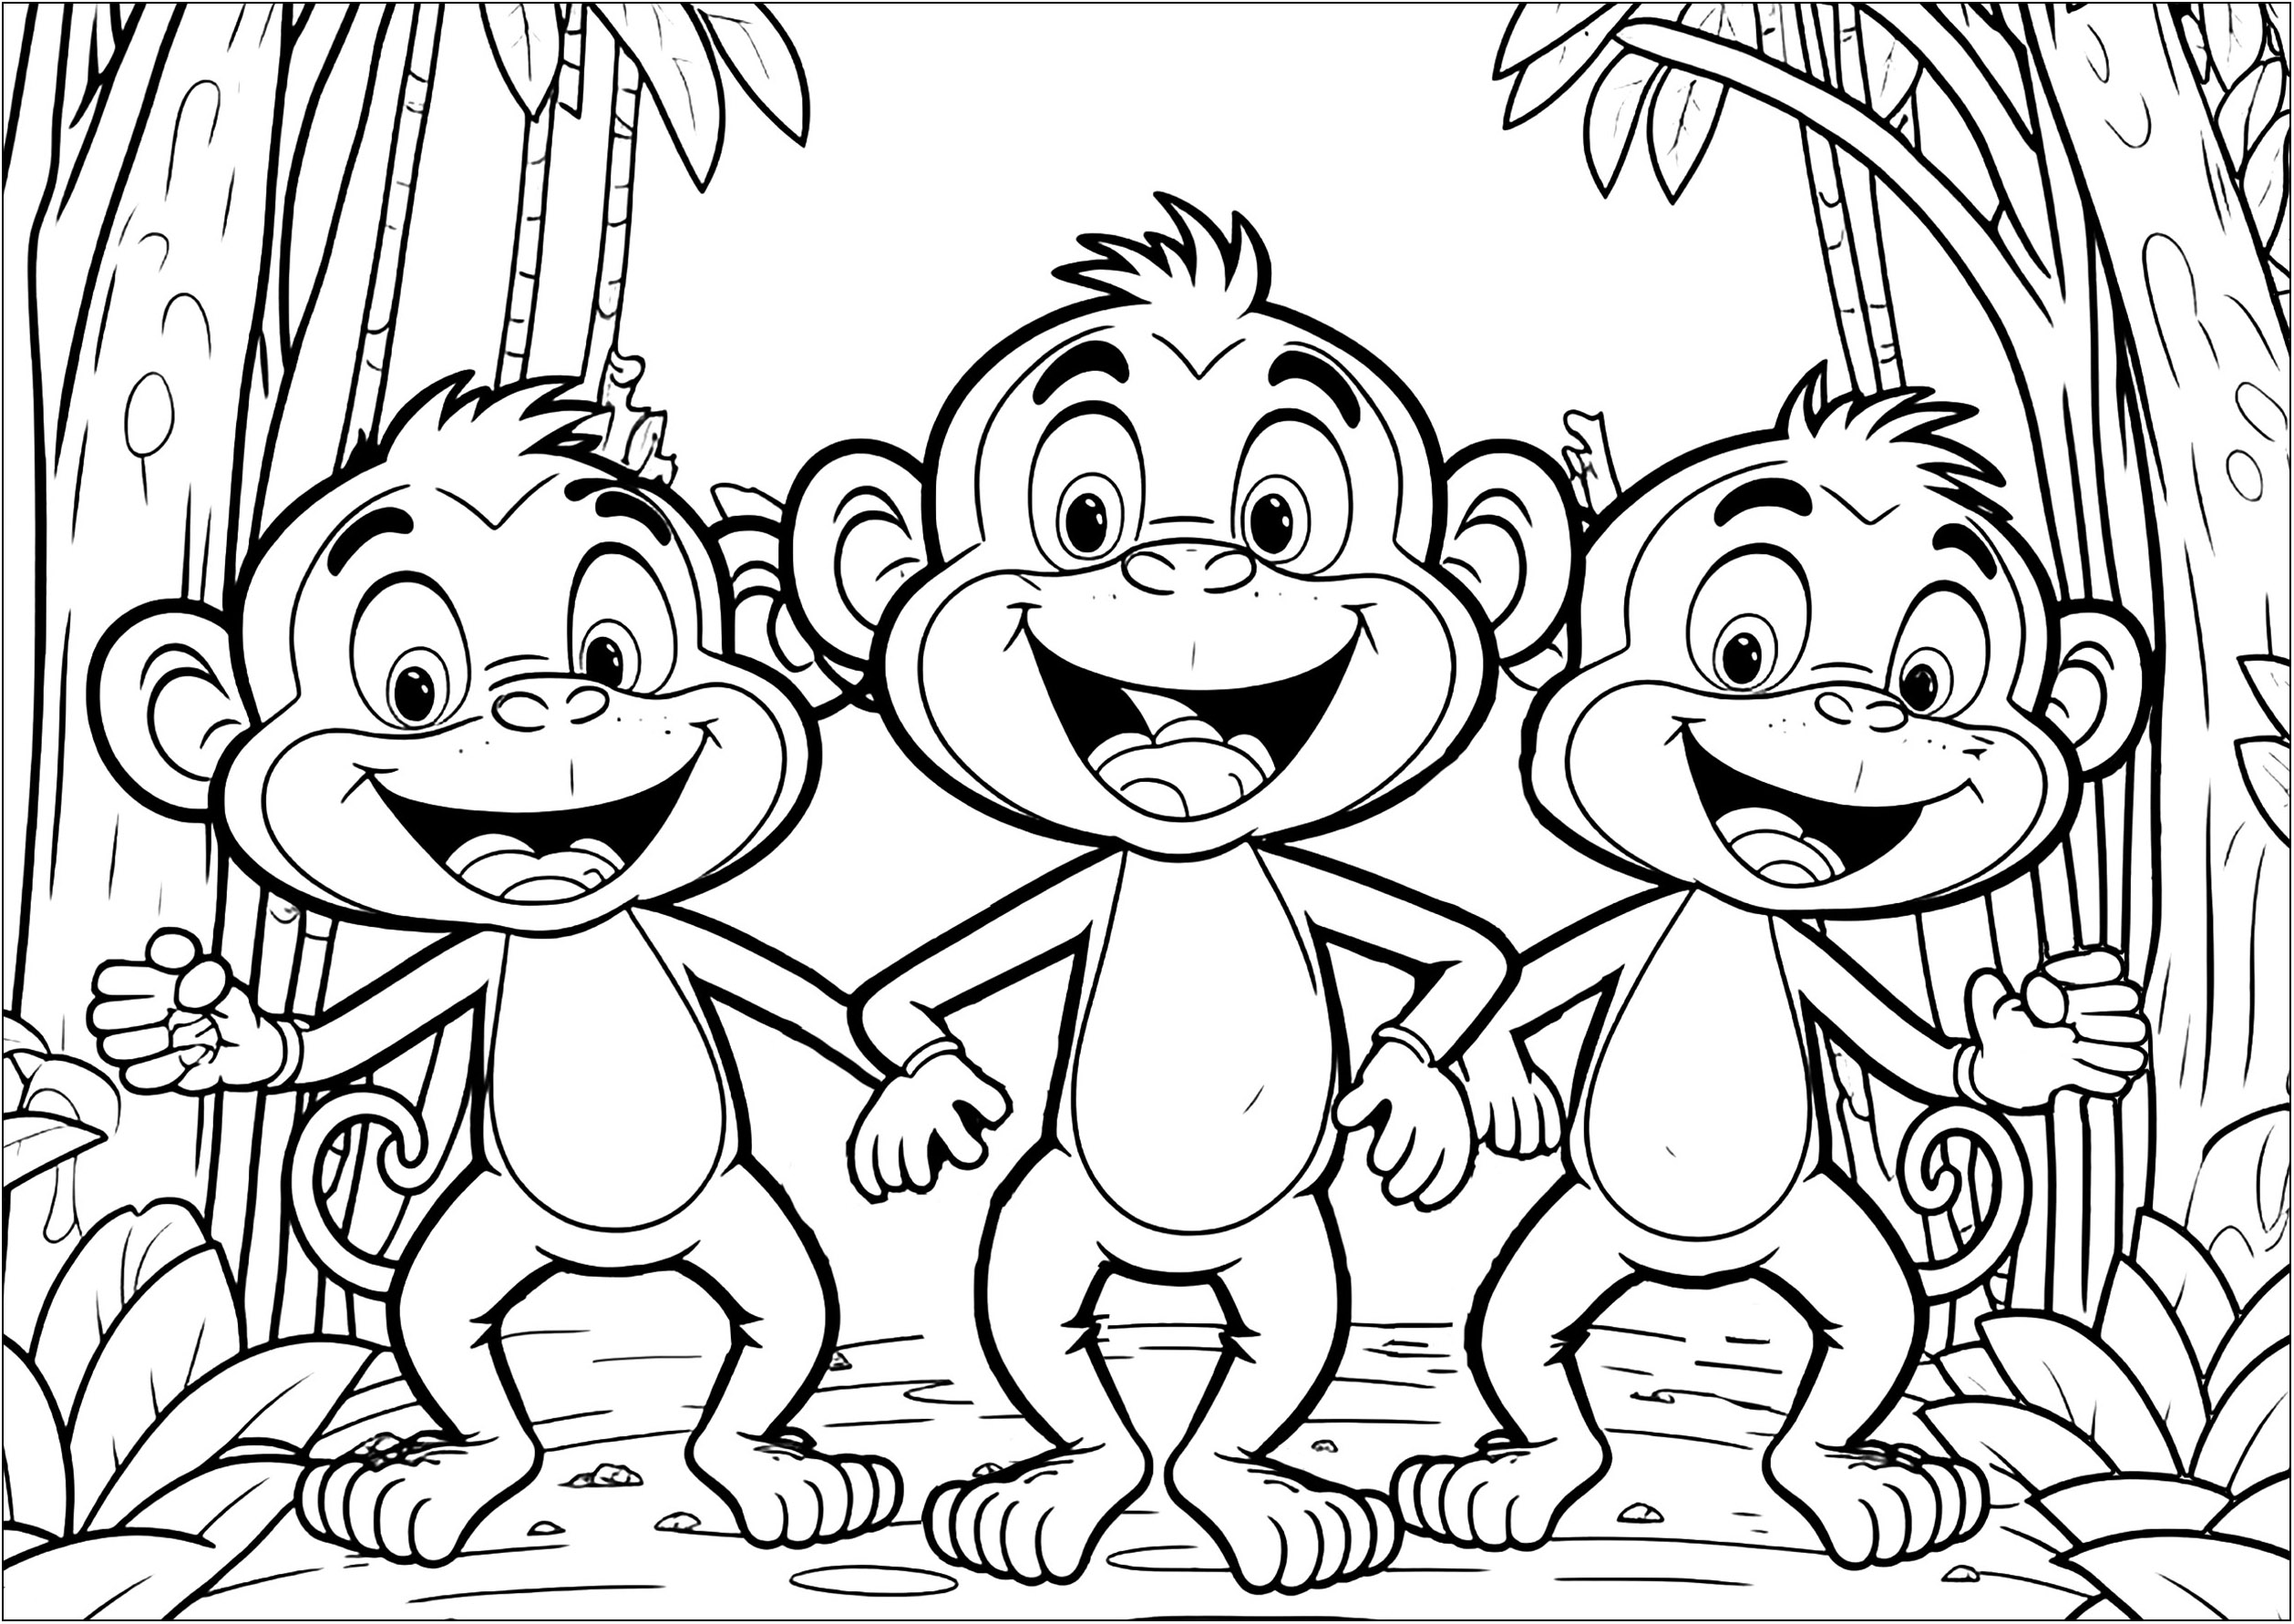 Tres divertidos Monos para colorear con vivos colores. Los niños pueden aprender a mezclar colores y utilizar su imaginación para crear una obra de arte única.